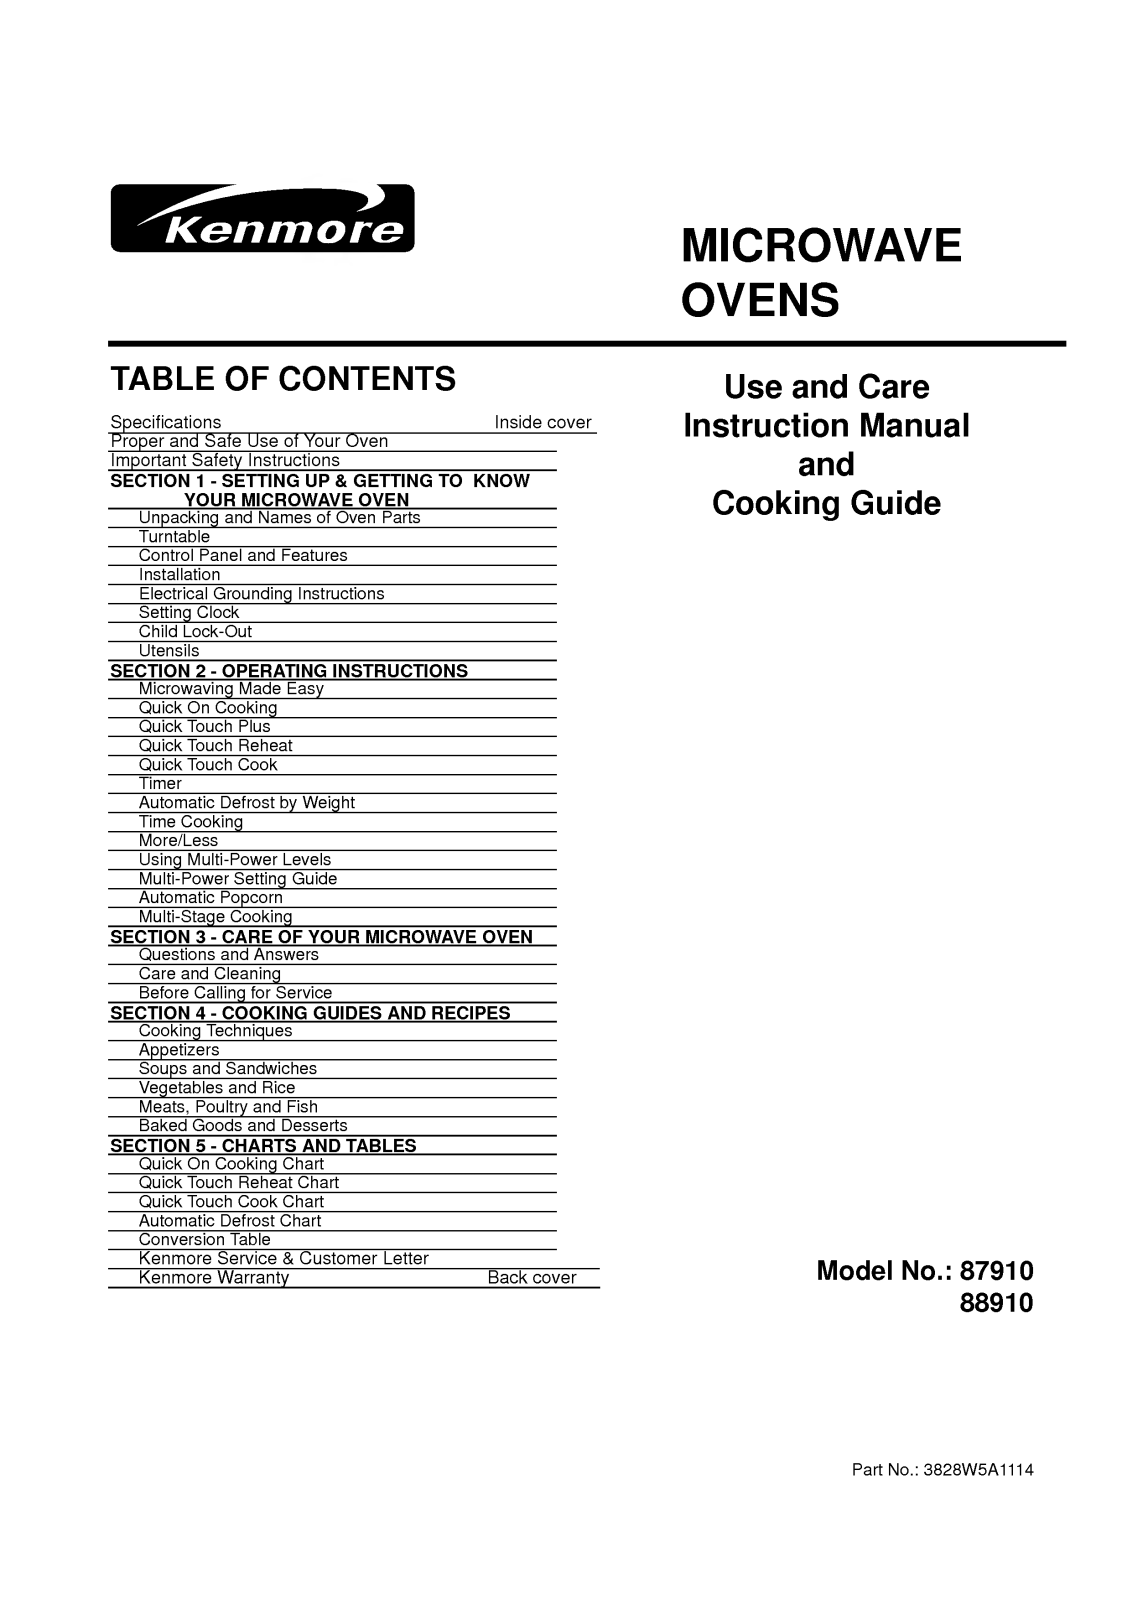 LG 87910 User Manual